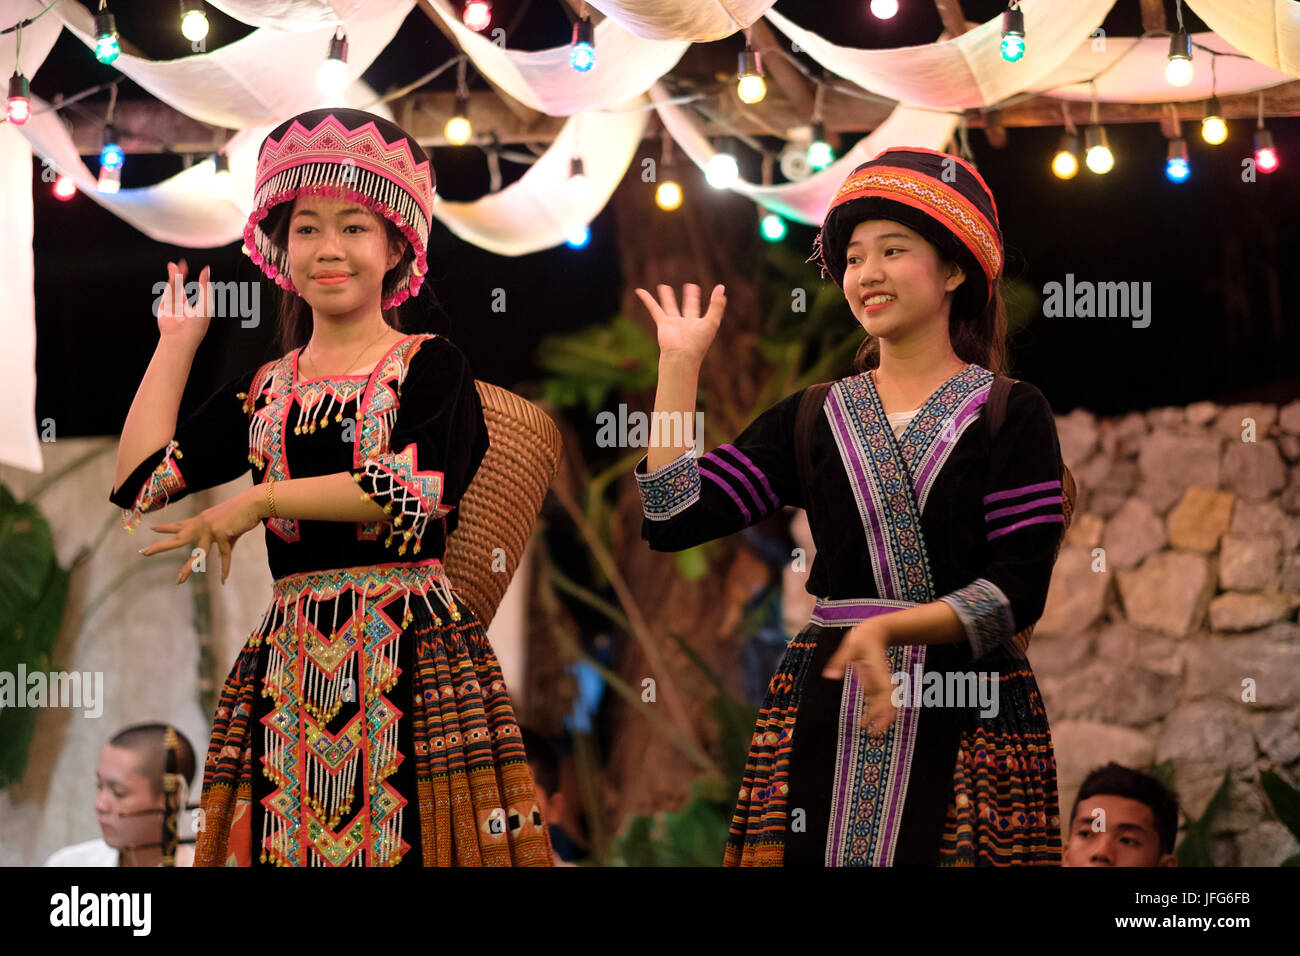 Danseurs laotiens traditionnels avec des vêtements traditionnels à Luang Prabang, Laos, Asie Banque D'Images